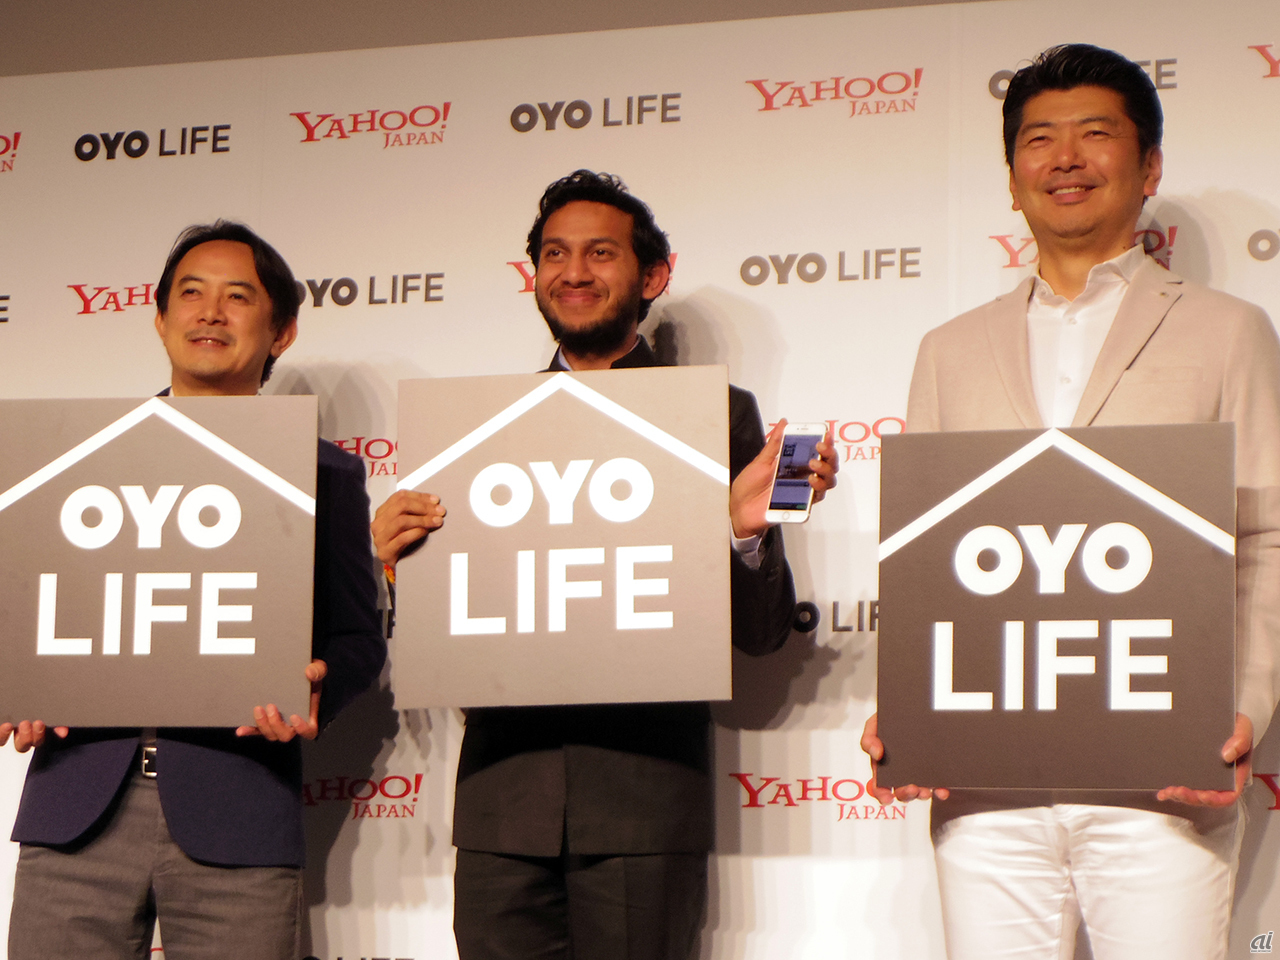 左から、ヤフー 代表取締役社長CEOの川邊健太郎氏、OYO CEOのリテシュ・アガルワル氏、OYO TECHNOLOGY&HOSPITALITY JAPAN CEOの勝瀬博則氏